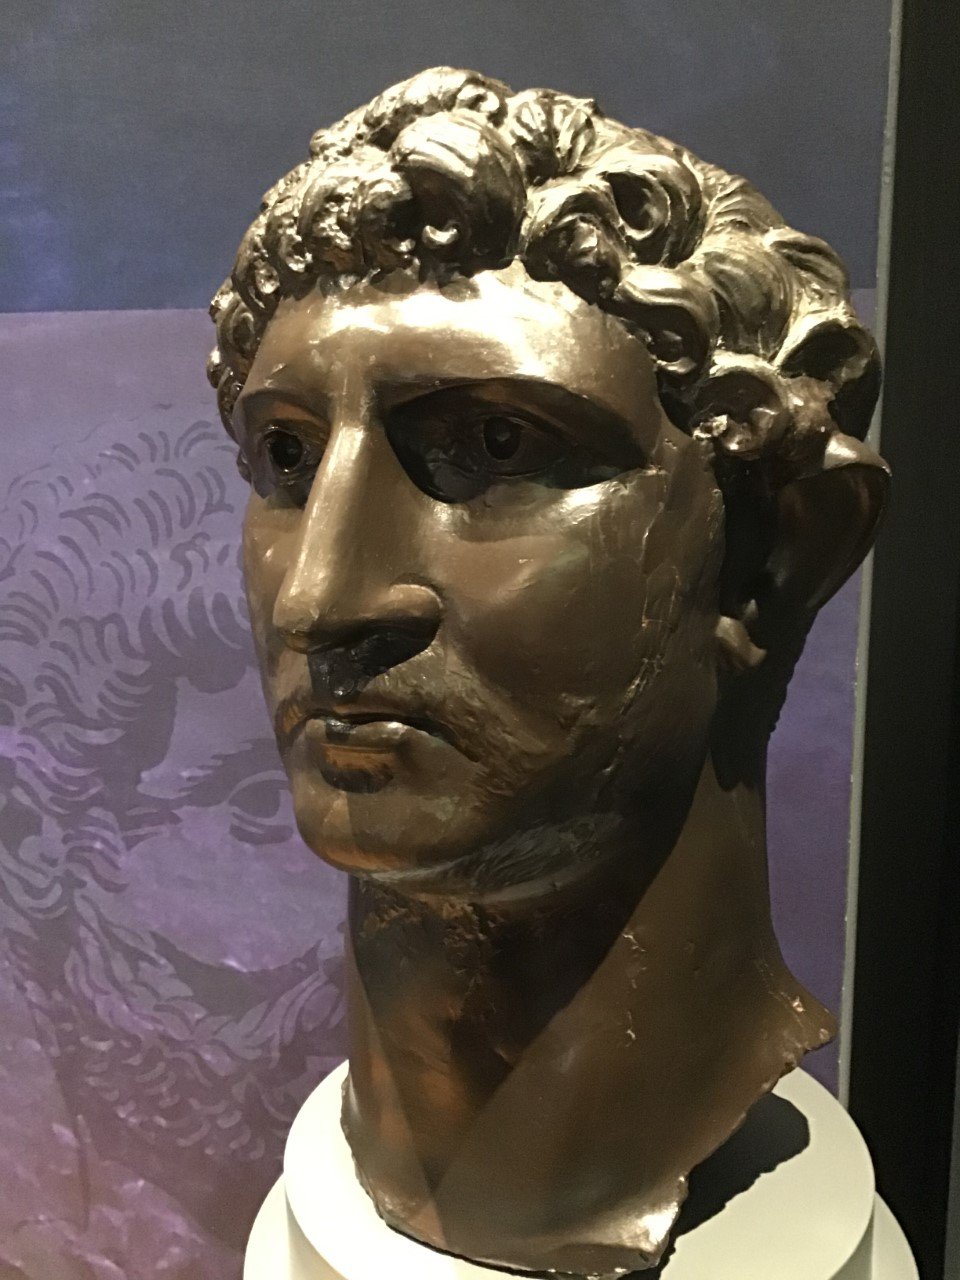 Replica head of the Emperor Hadrian